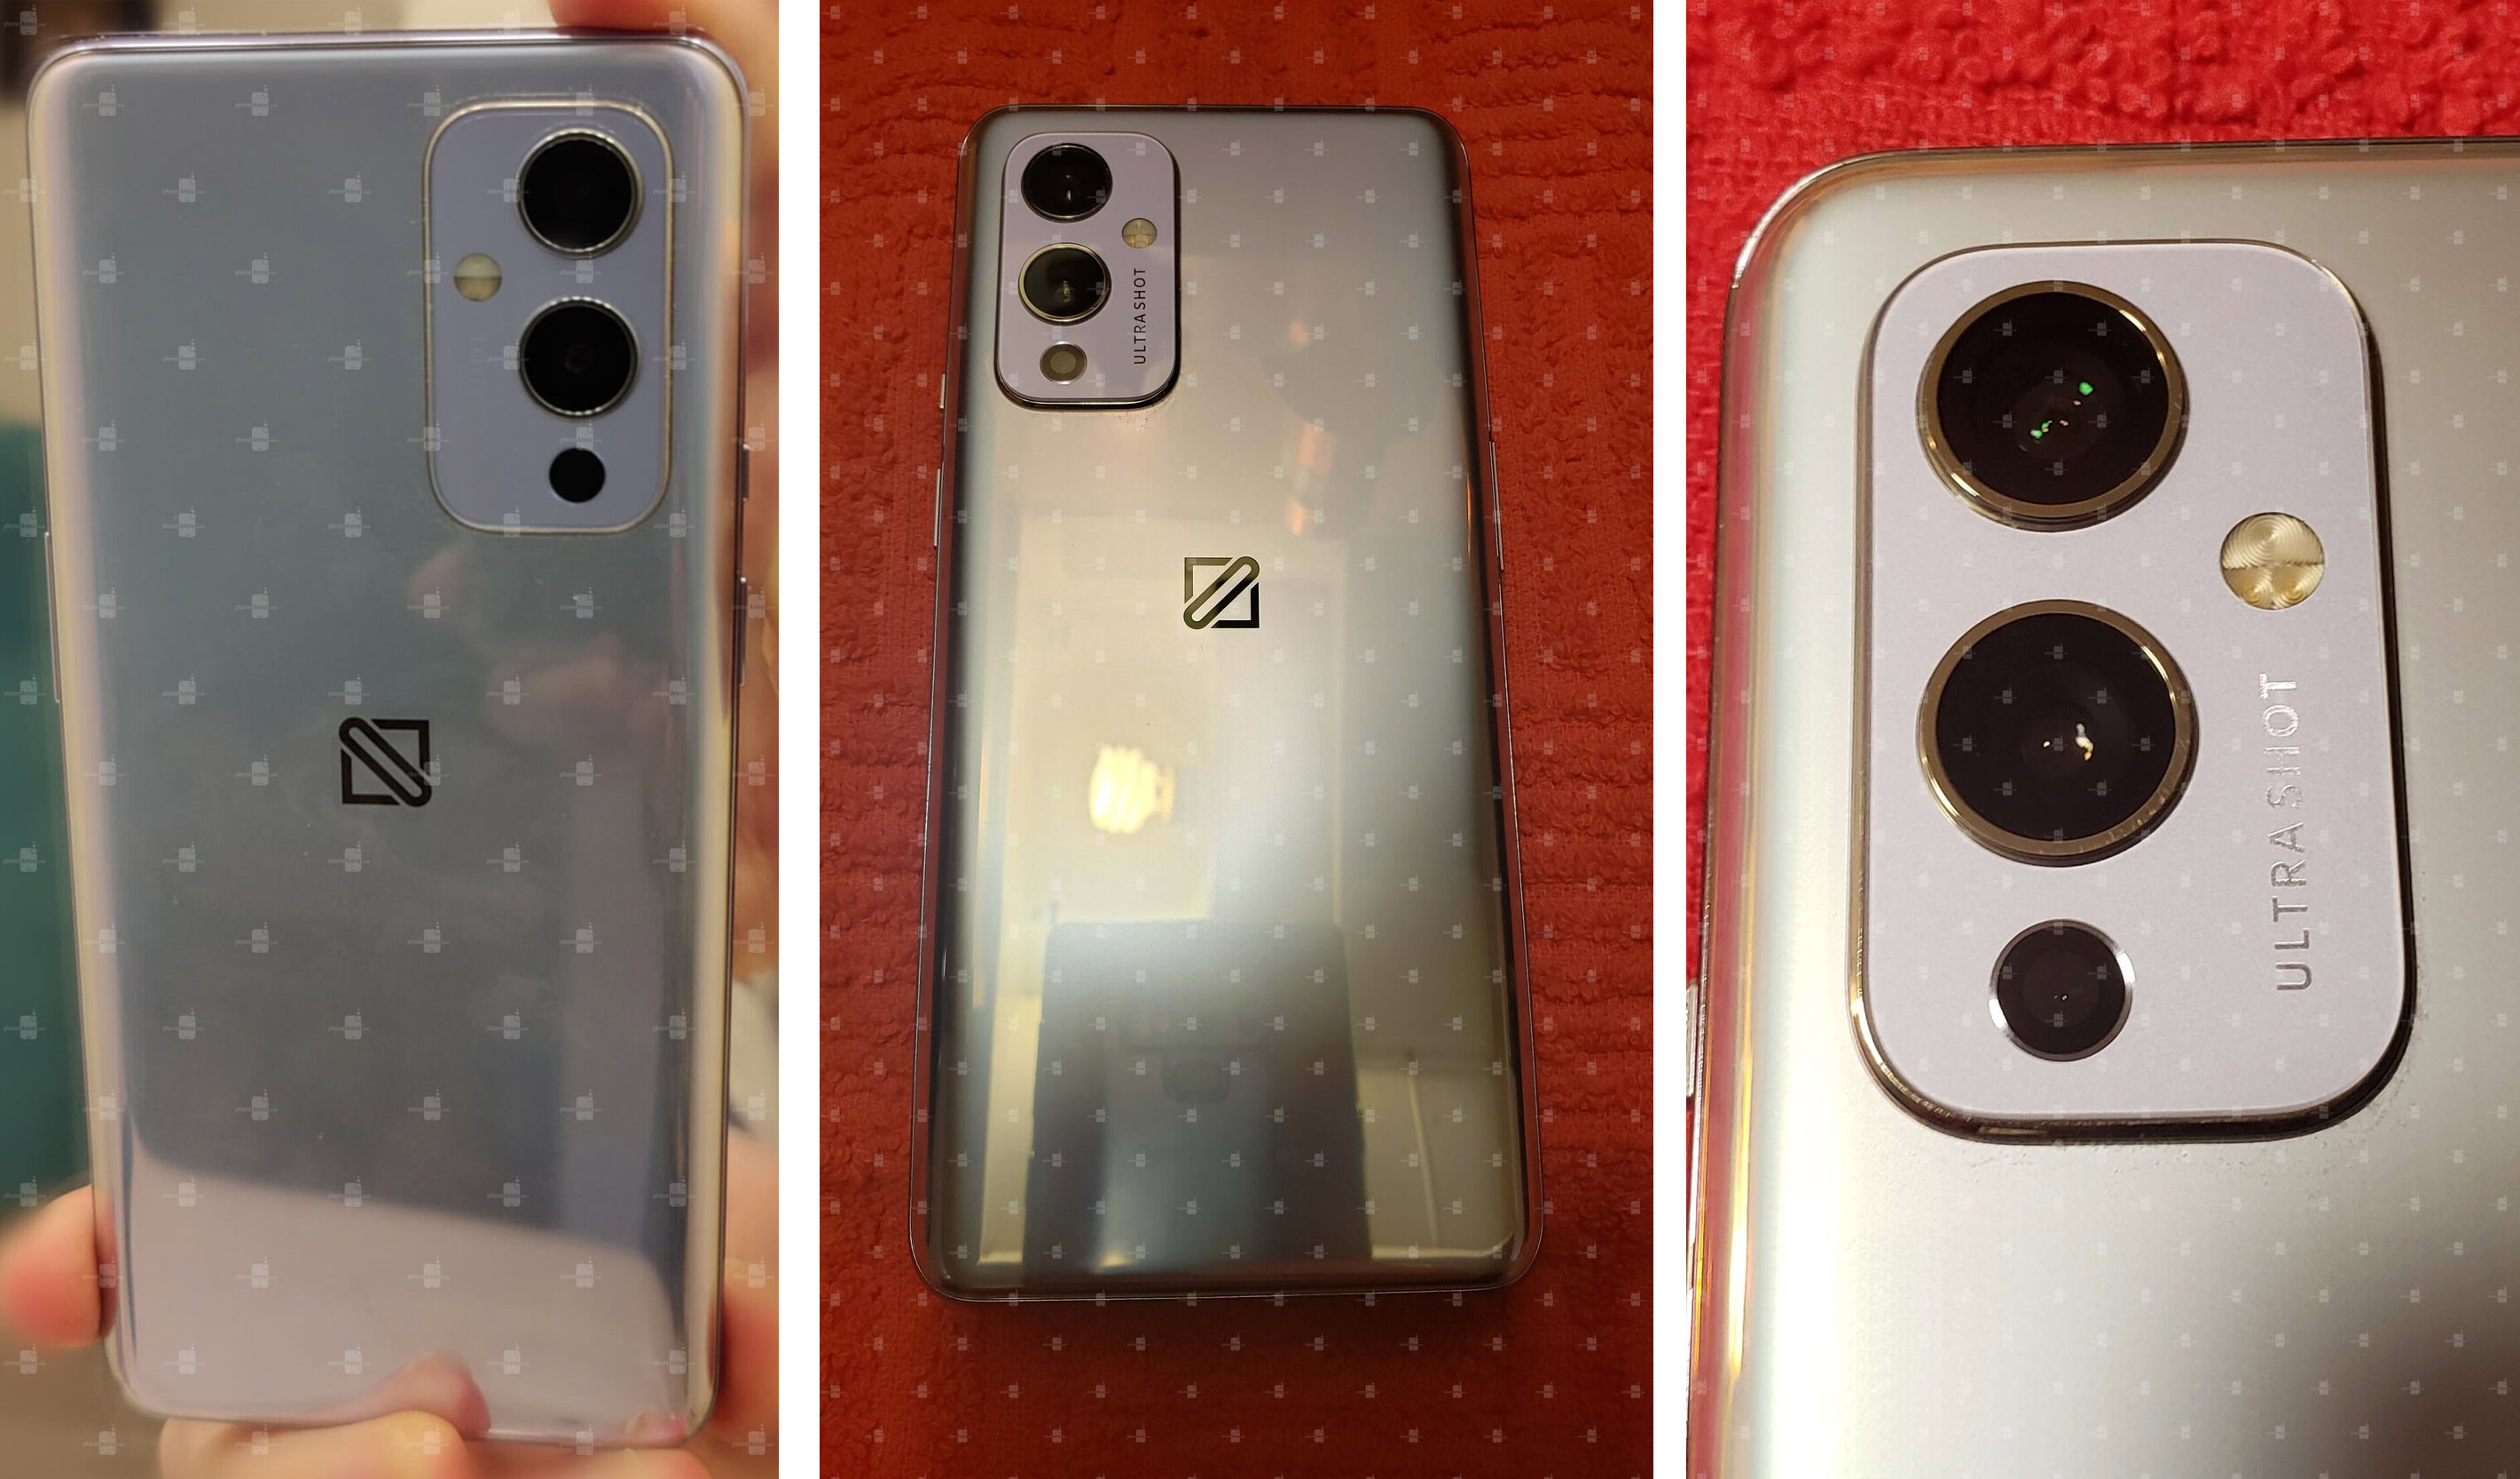 پنل پشتی و دوربین اصلی وان پلاس ۹ / OnePlus 9 5G فاش شده